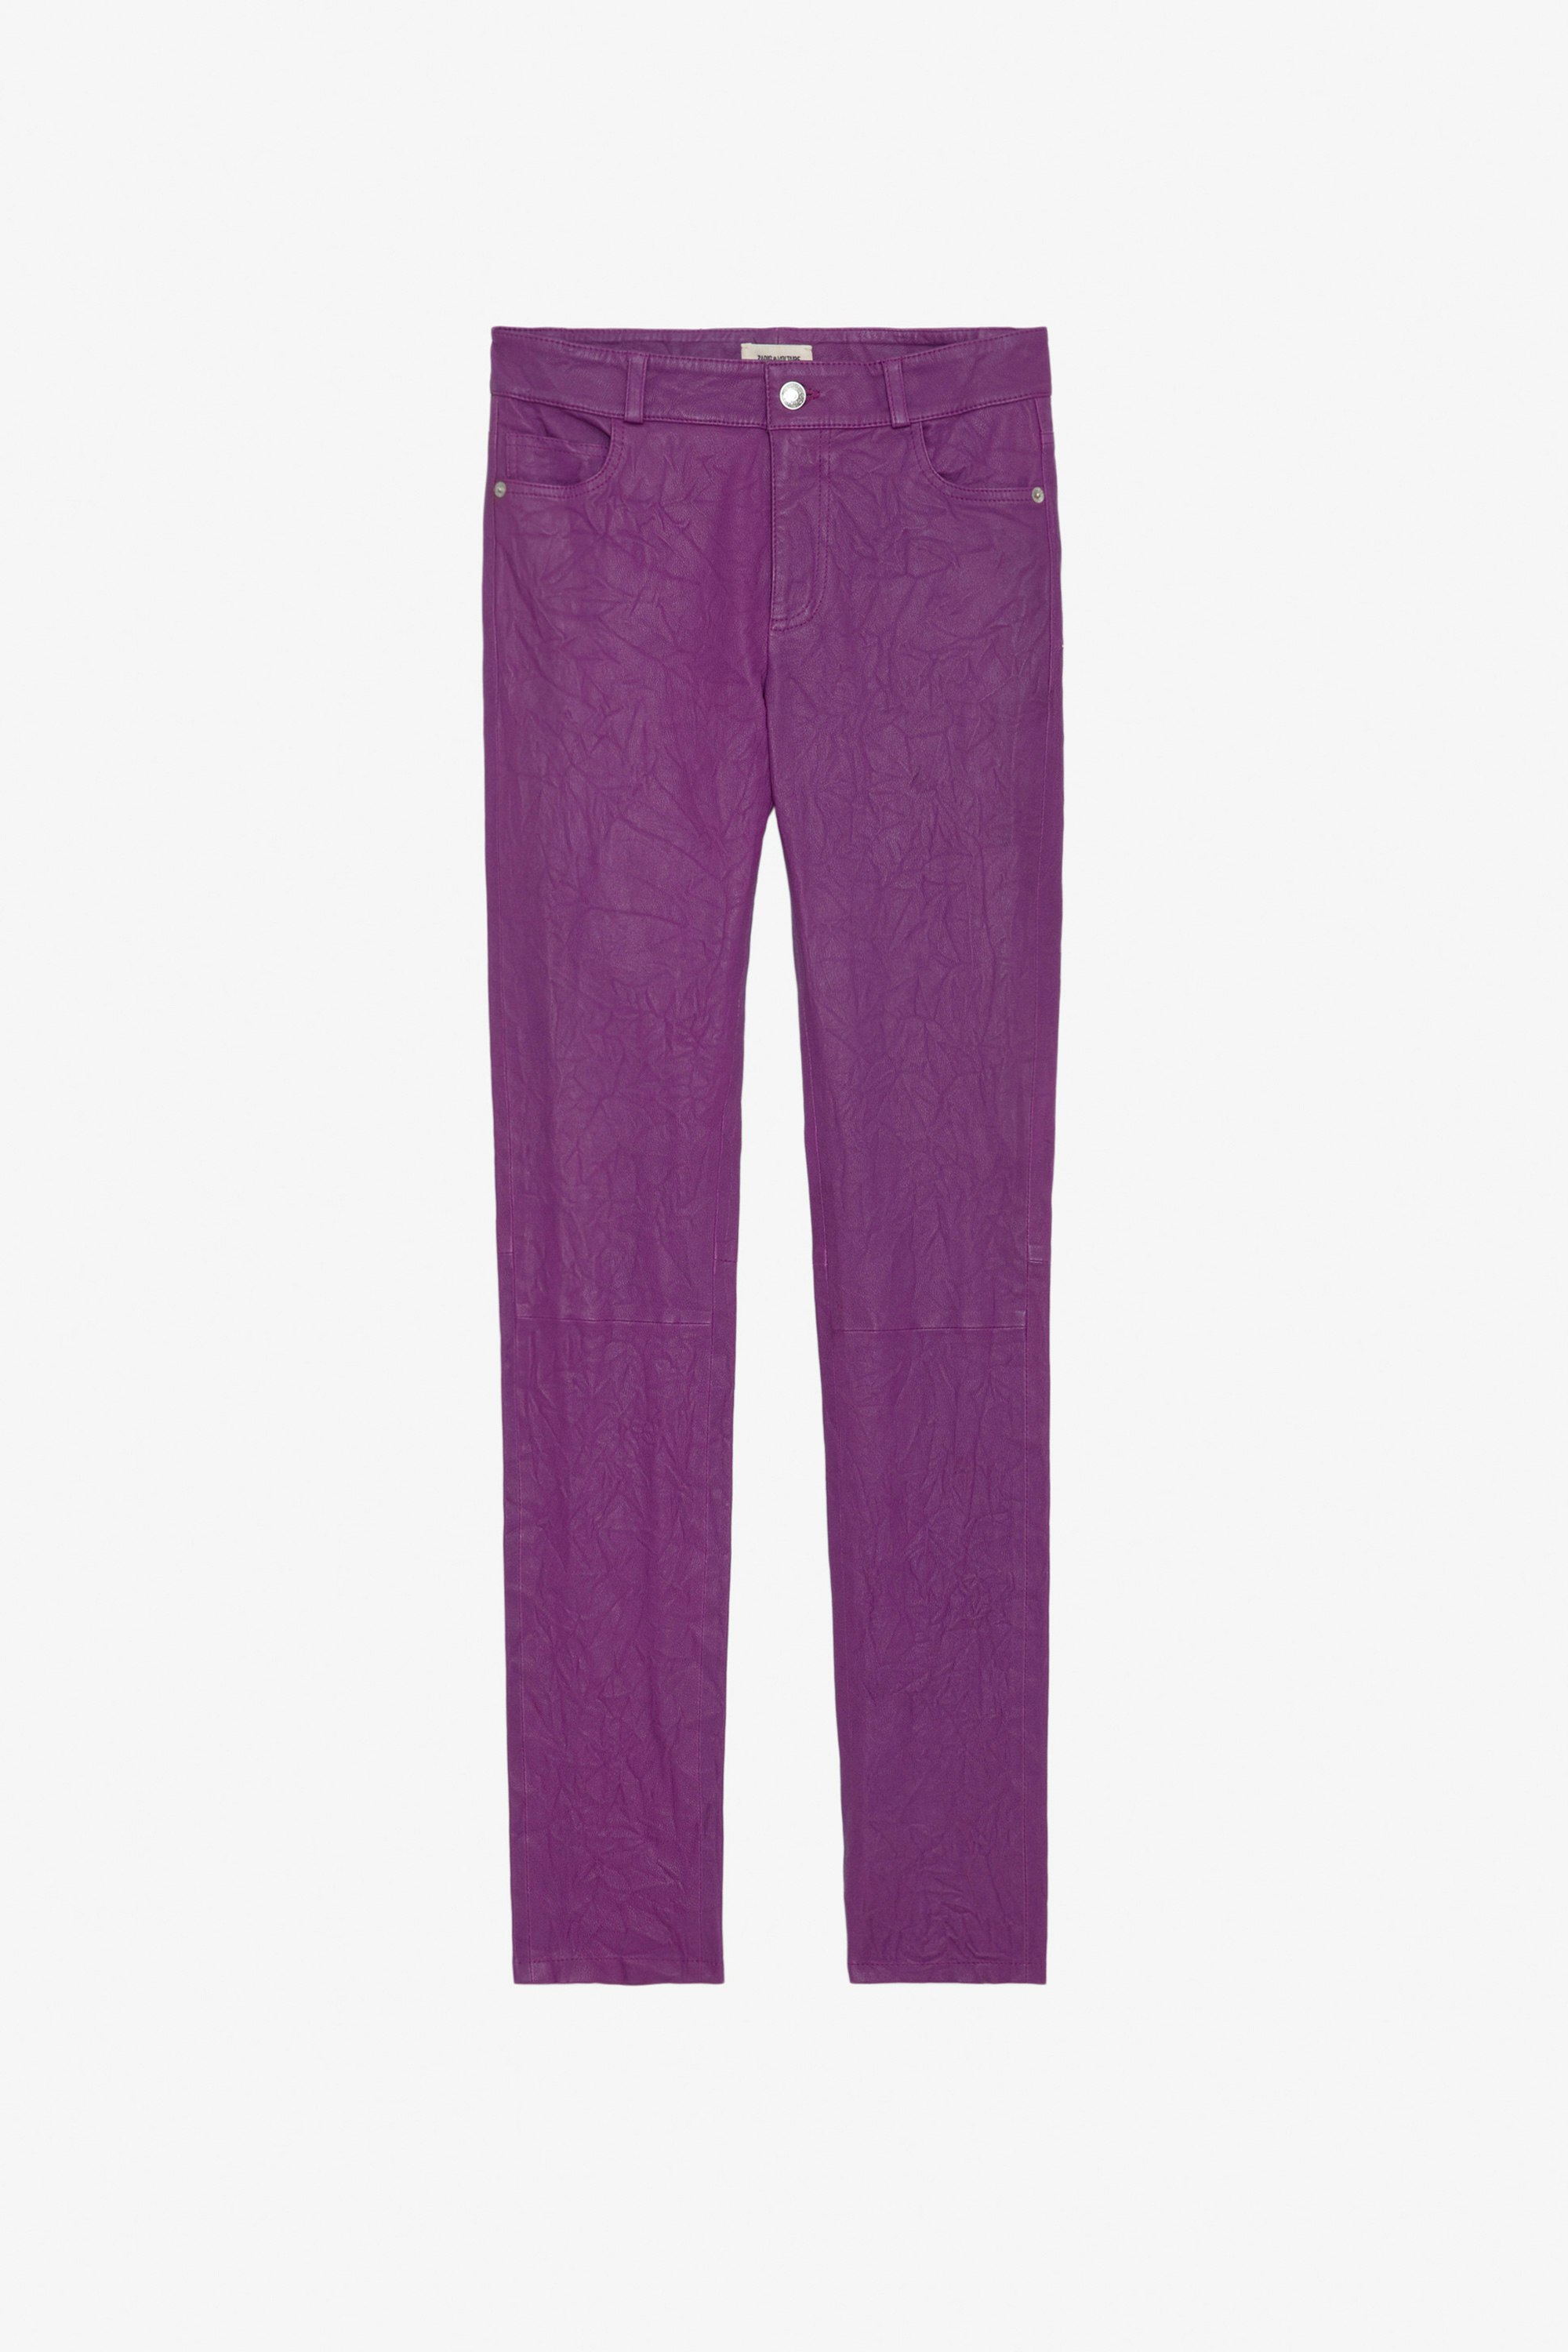 Pantalón de Piel Arrugada Phlame - Pantalón violeta de piel arrugada con bolsillos.